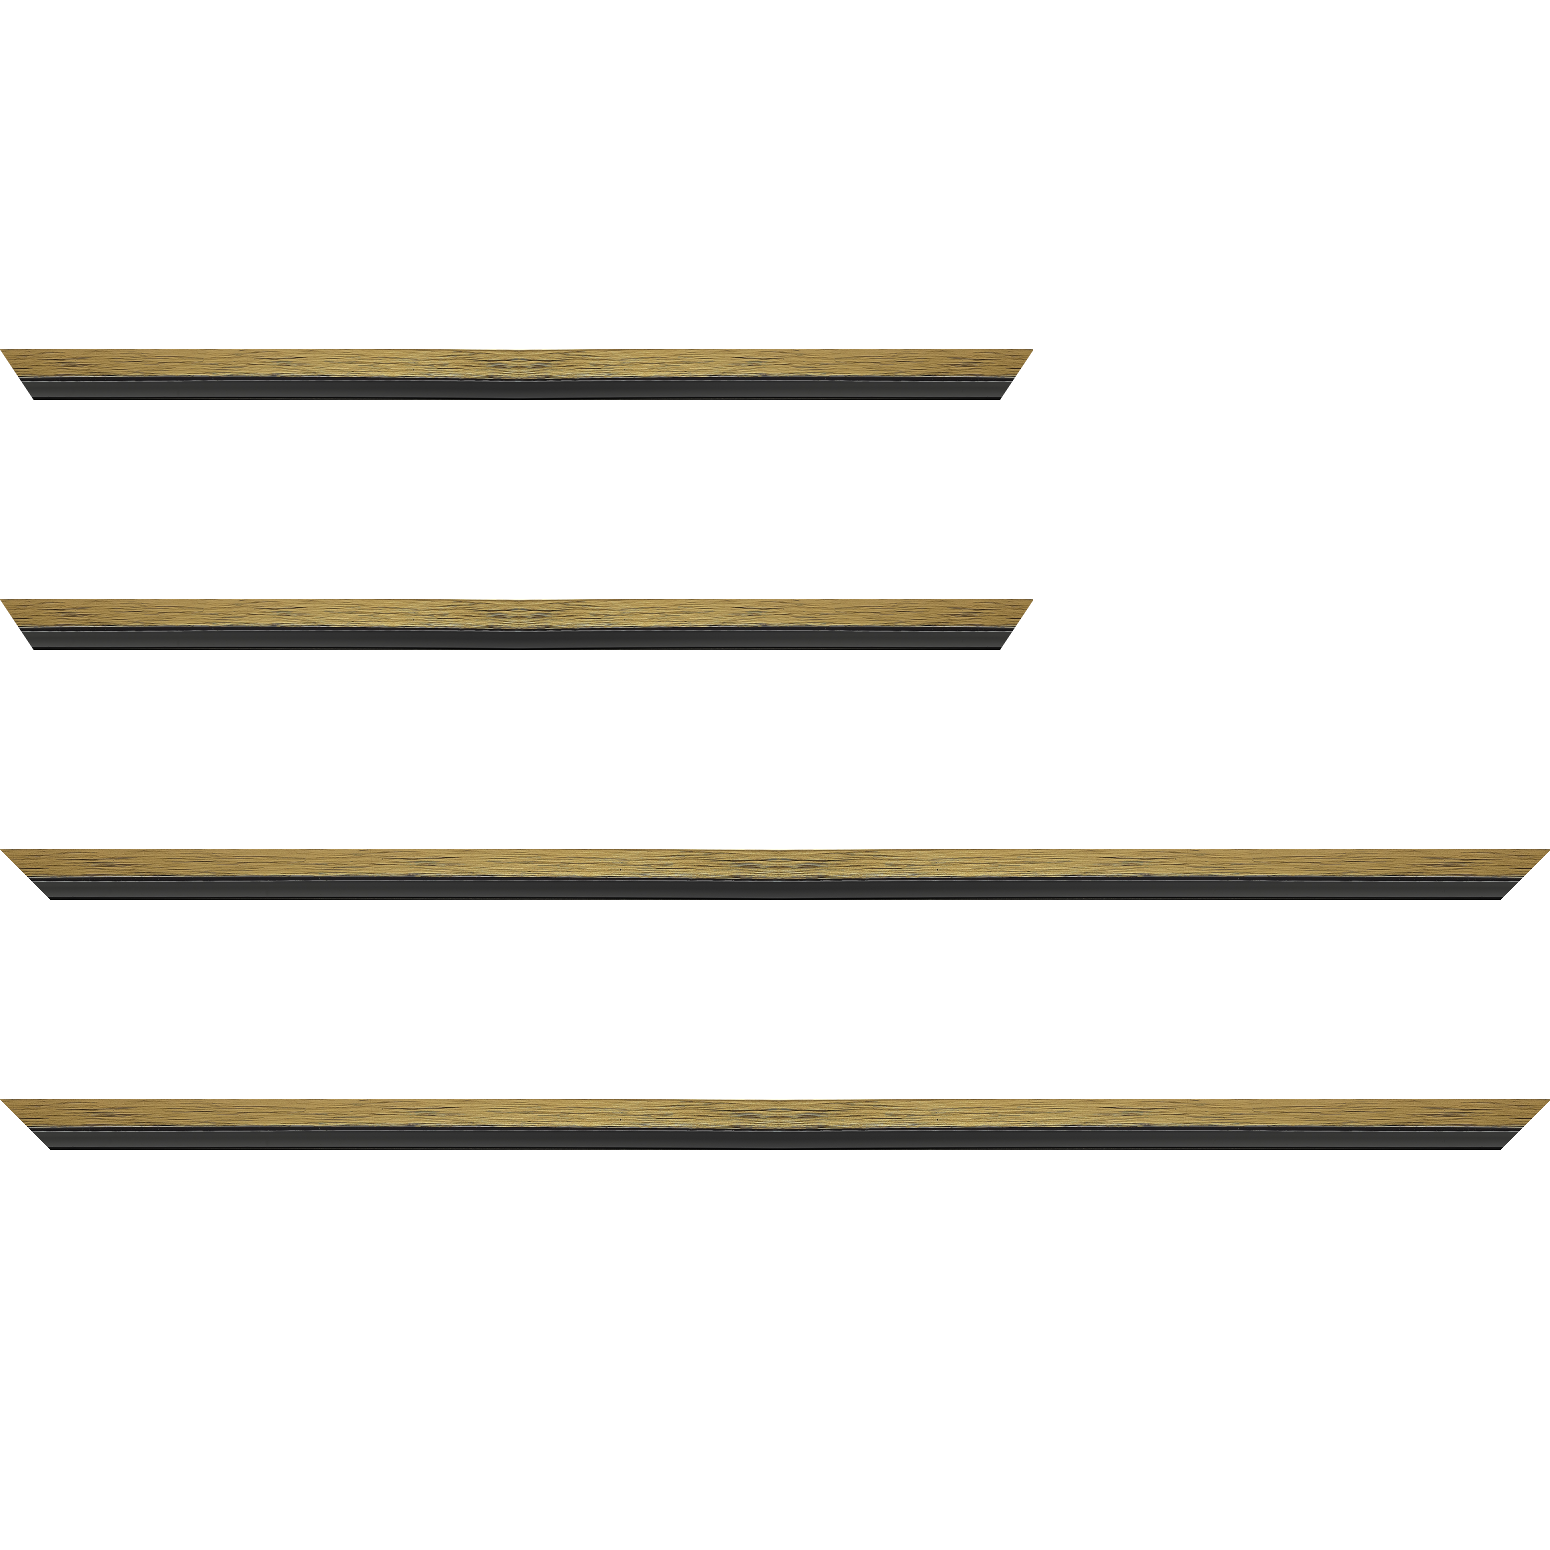 Baguette bois profil plat largeur 1.6cm couleur or contemporain filet noir en retrait de la face du cadre de 6mm assurant un effet très original - 18x24